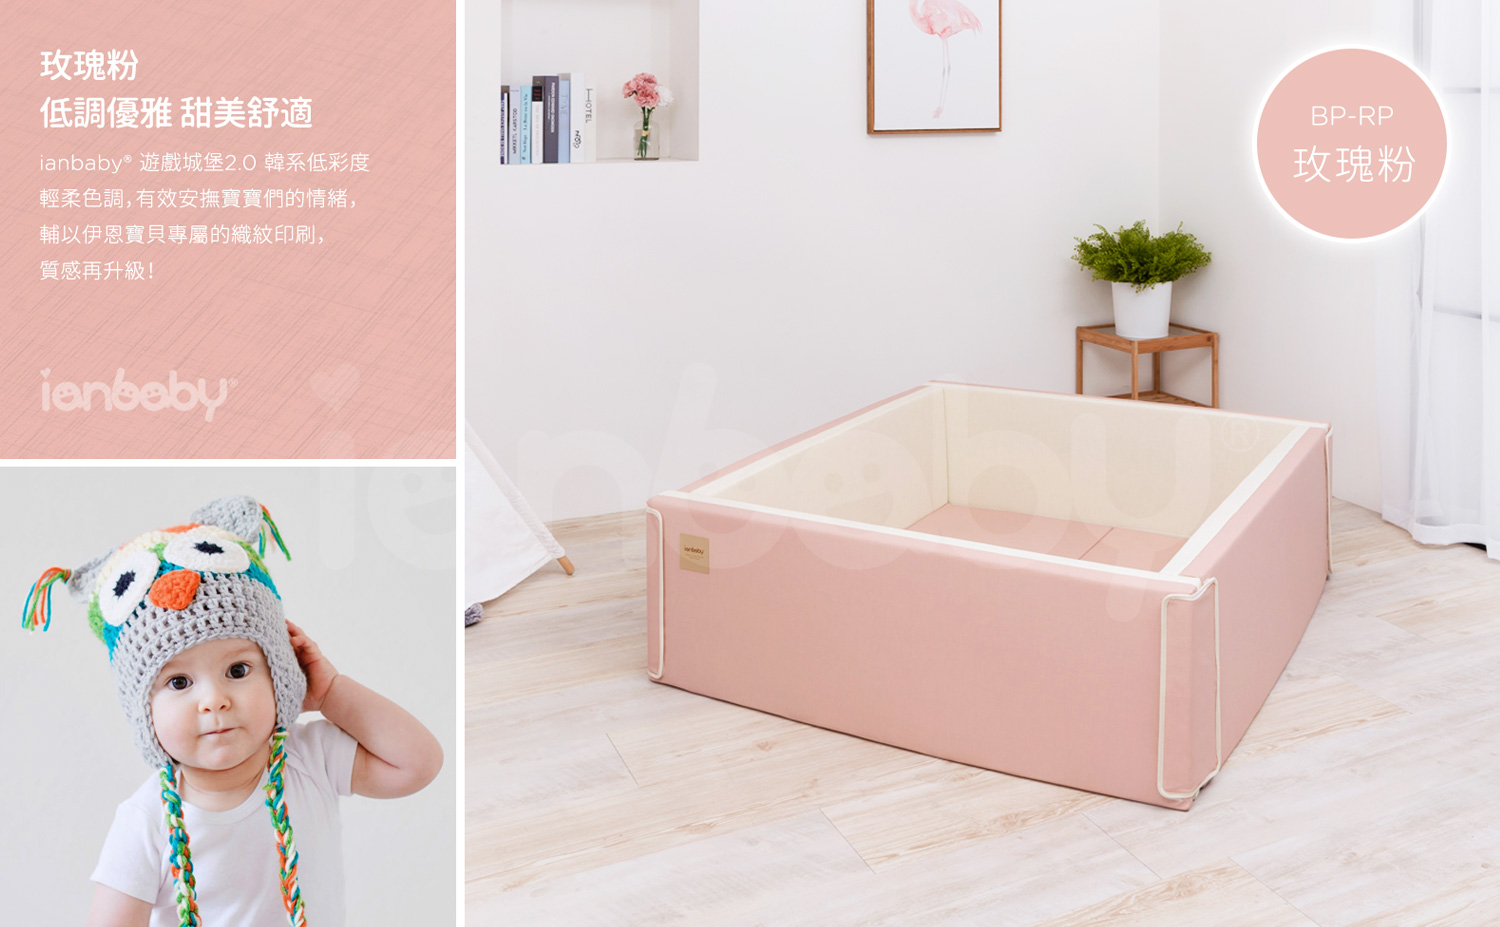 M-BP_26.jpg/ ianbaby 韓製遊戲城堡2.0(玫瑰粉)，低調優雅且甜美舒適的配色，有效安撫寶寶們的情緒。